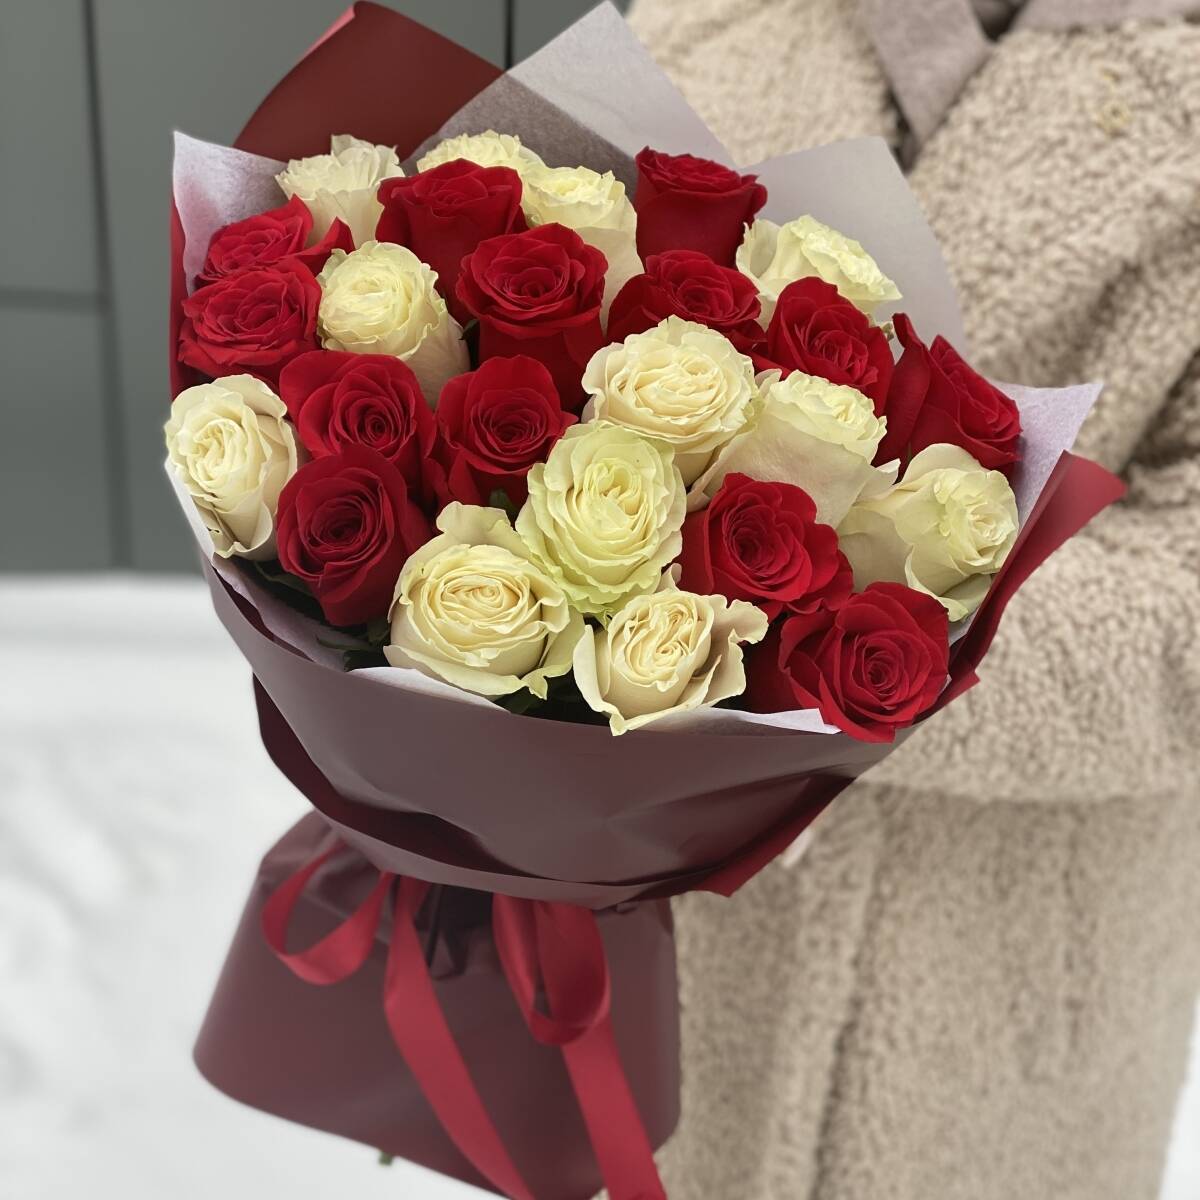 Влюбленный взгляд из 25 красных и белых роз в оформлении